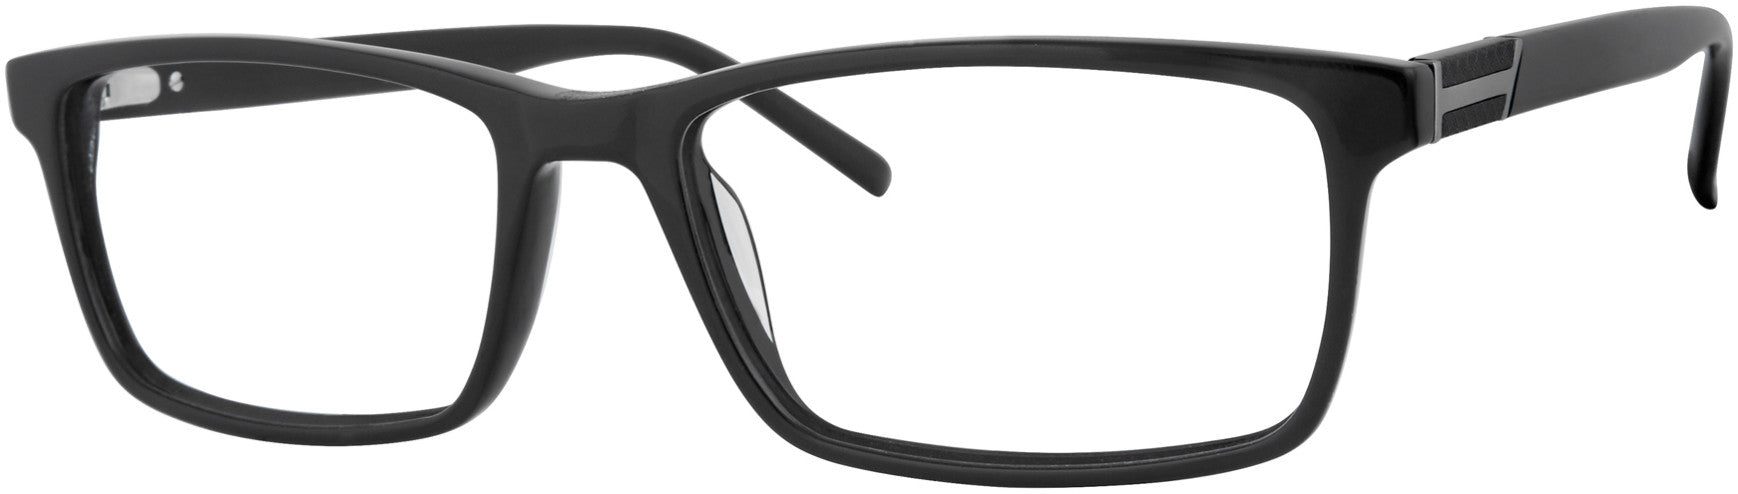  Chesterfield 75XL Rectangular Eyeglasses 0807-0807  Black (00 Demo Lens)